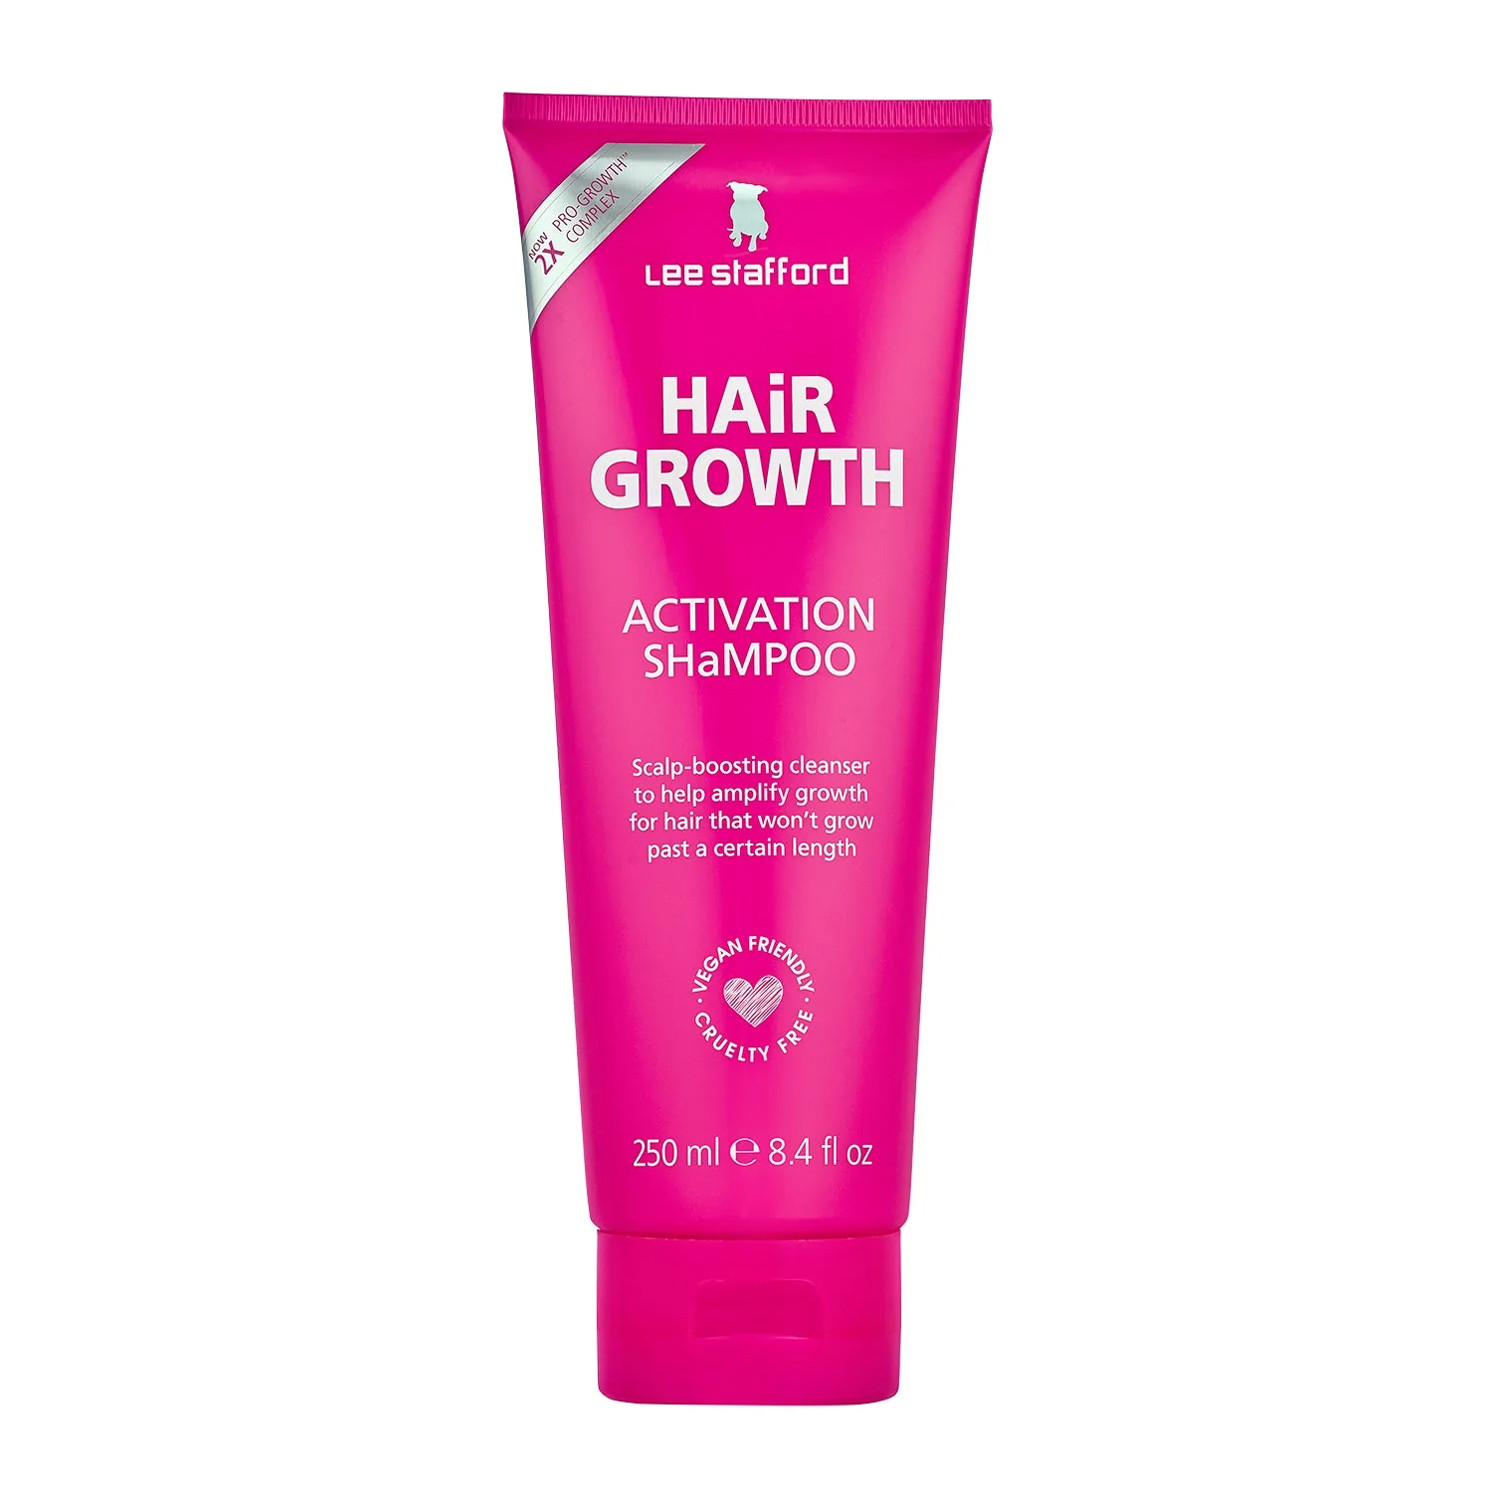 Відгуки про Lee Stafford Hair Growth Shampoo Шампунь для усиления роста волос